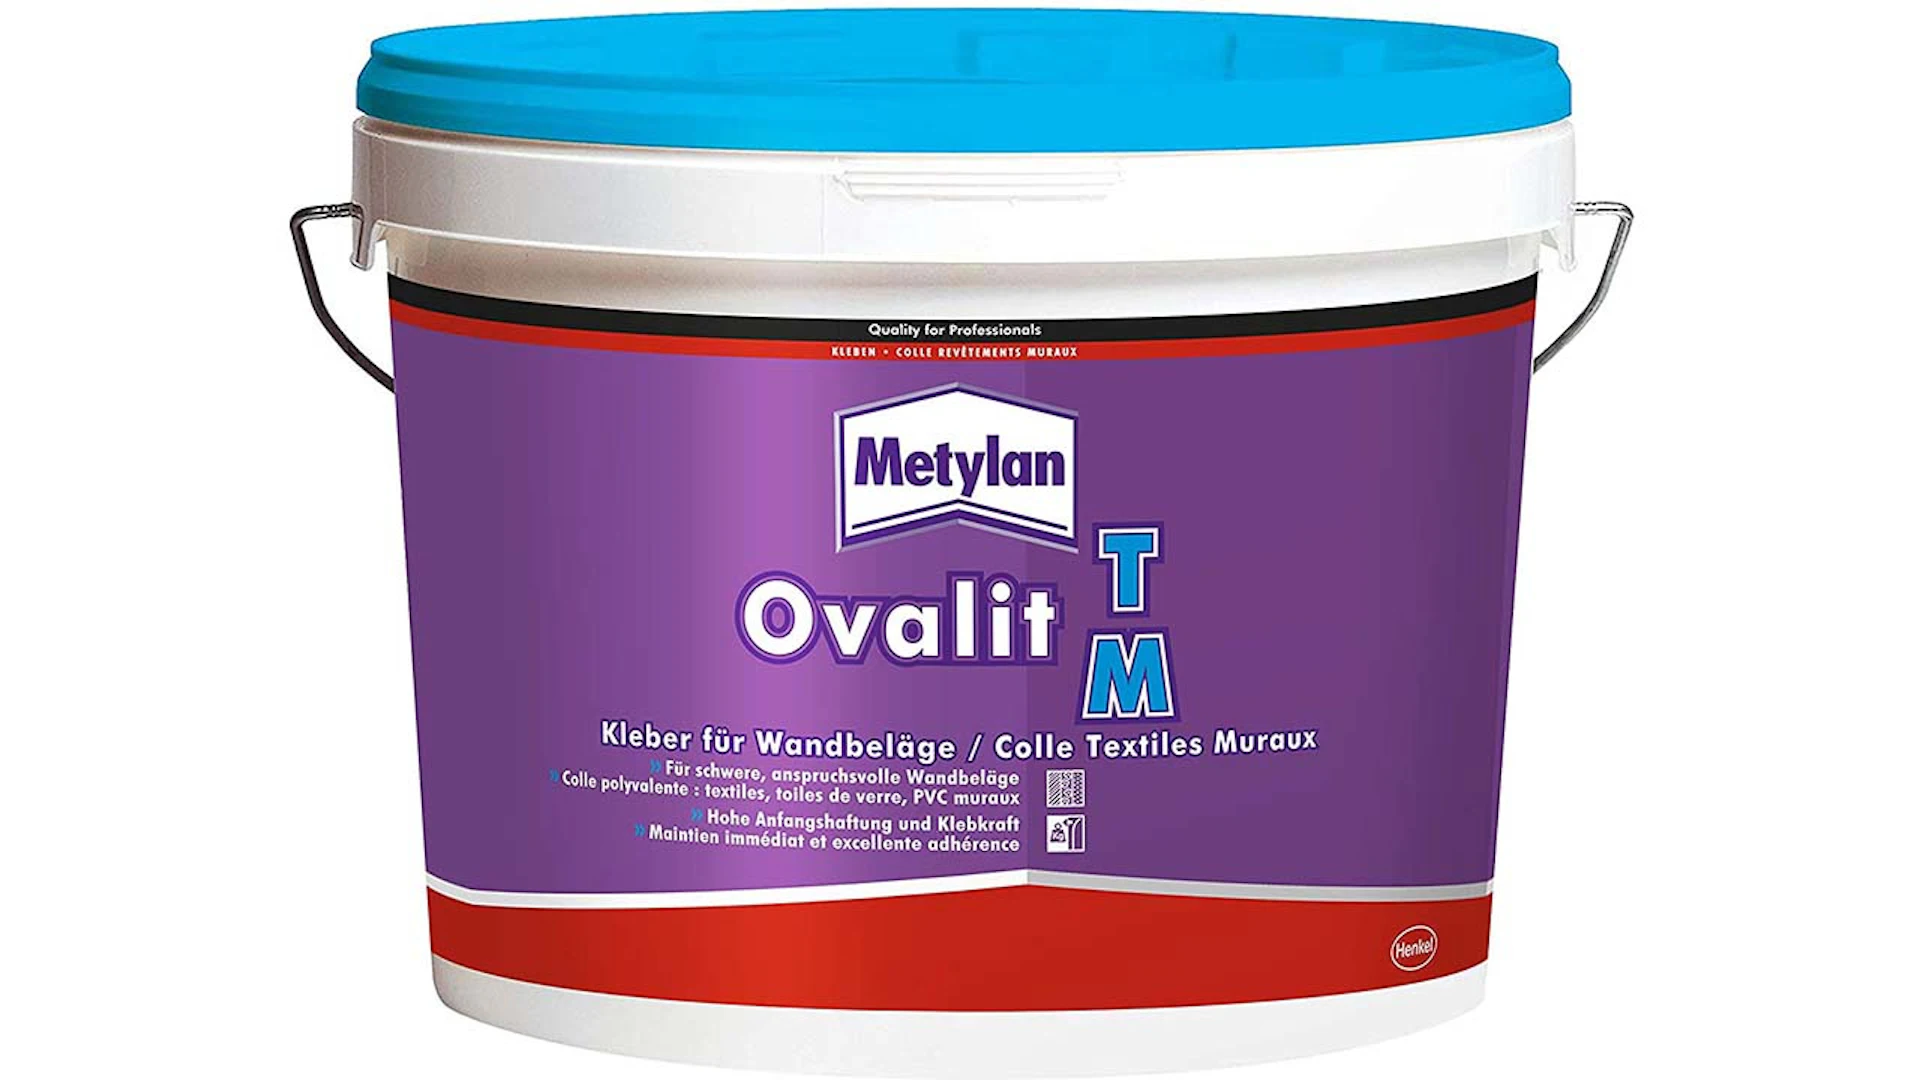 Metylan Ovalit TM Wallcovering Adhesive white